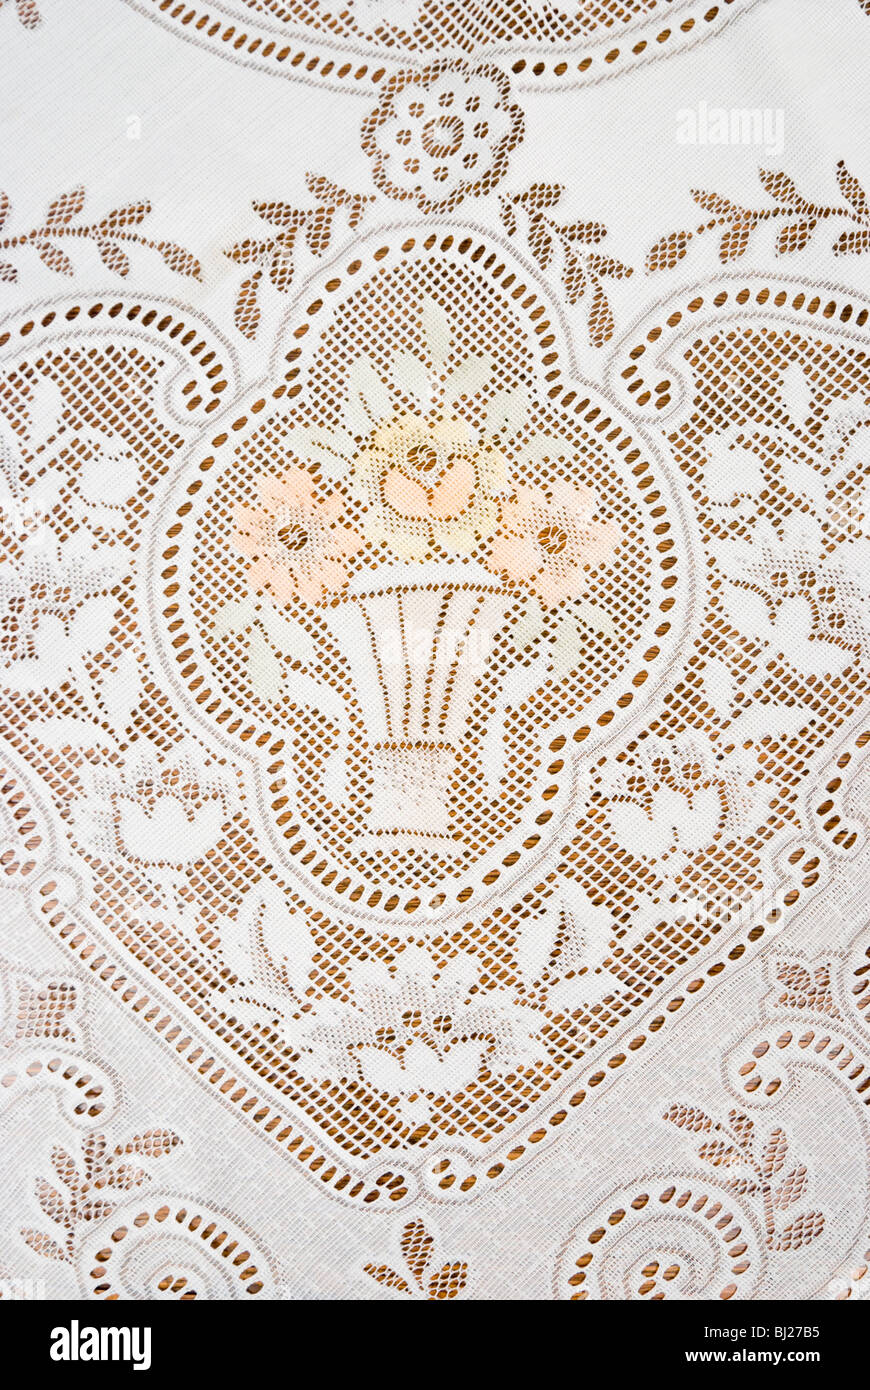 Photo d'une nappe en dentelle avec motif floral et de vase. Banque D'Images